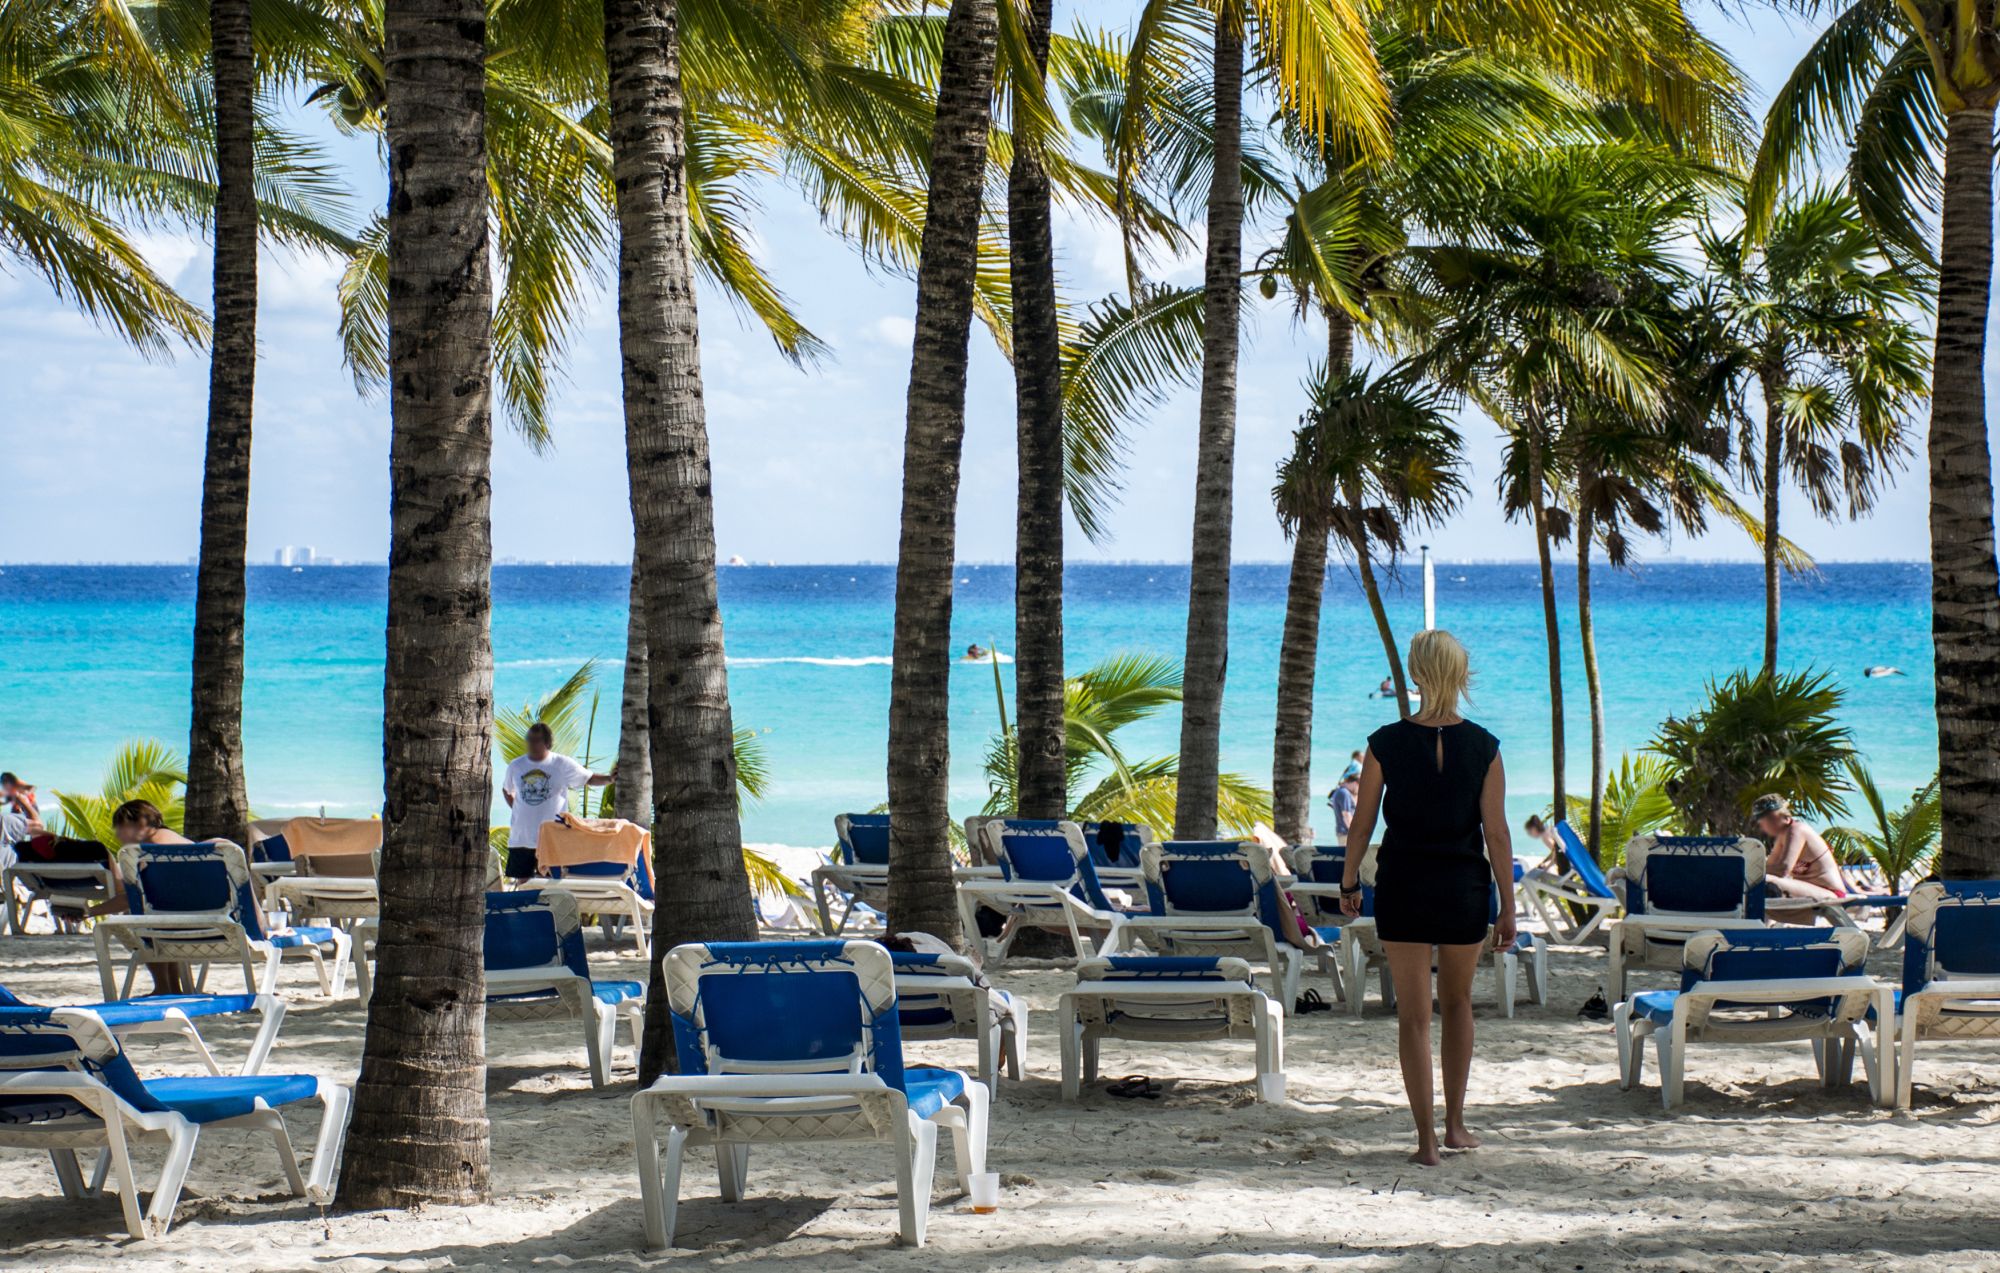 Plaża z palmami na Playe del Carmen w meksykańskim Jukatanie